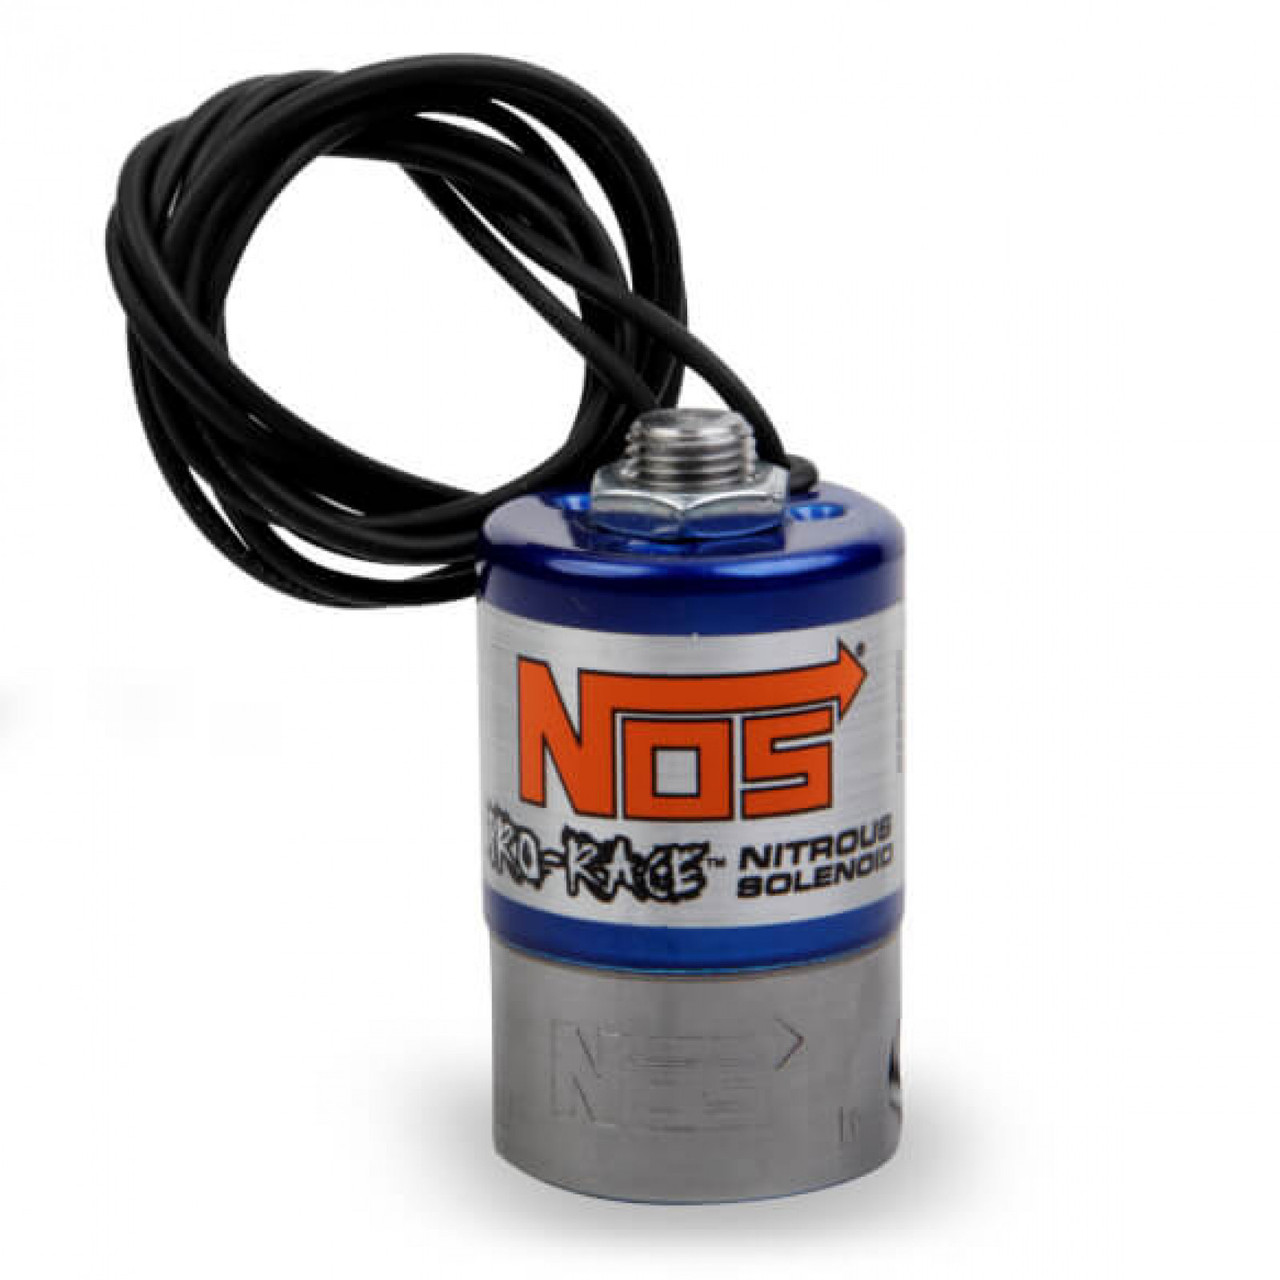 NOS Pro Race Nitrous Solenoid (NOS-118048RNOS)